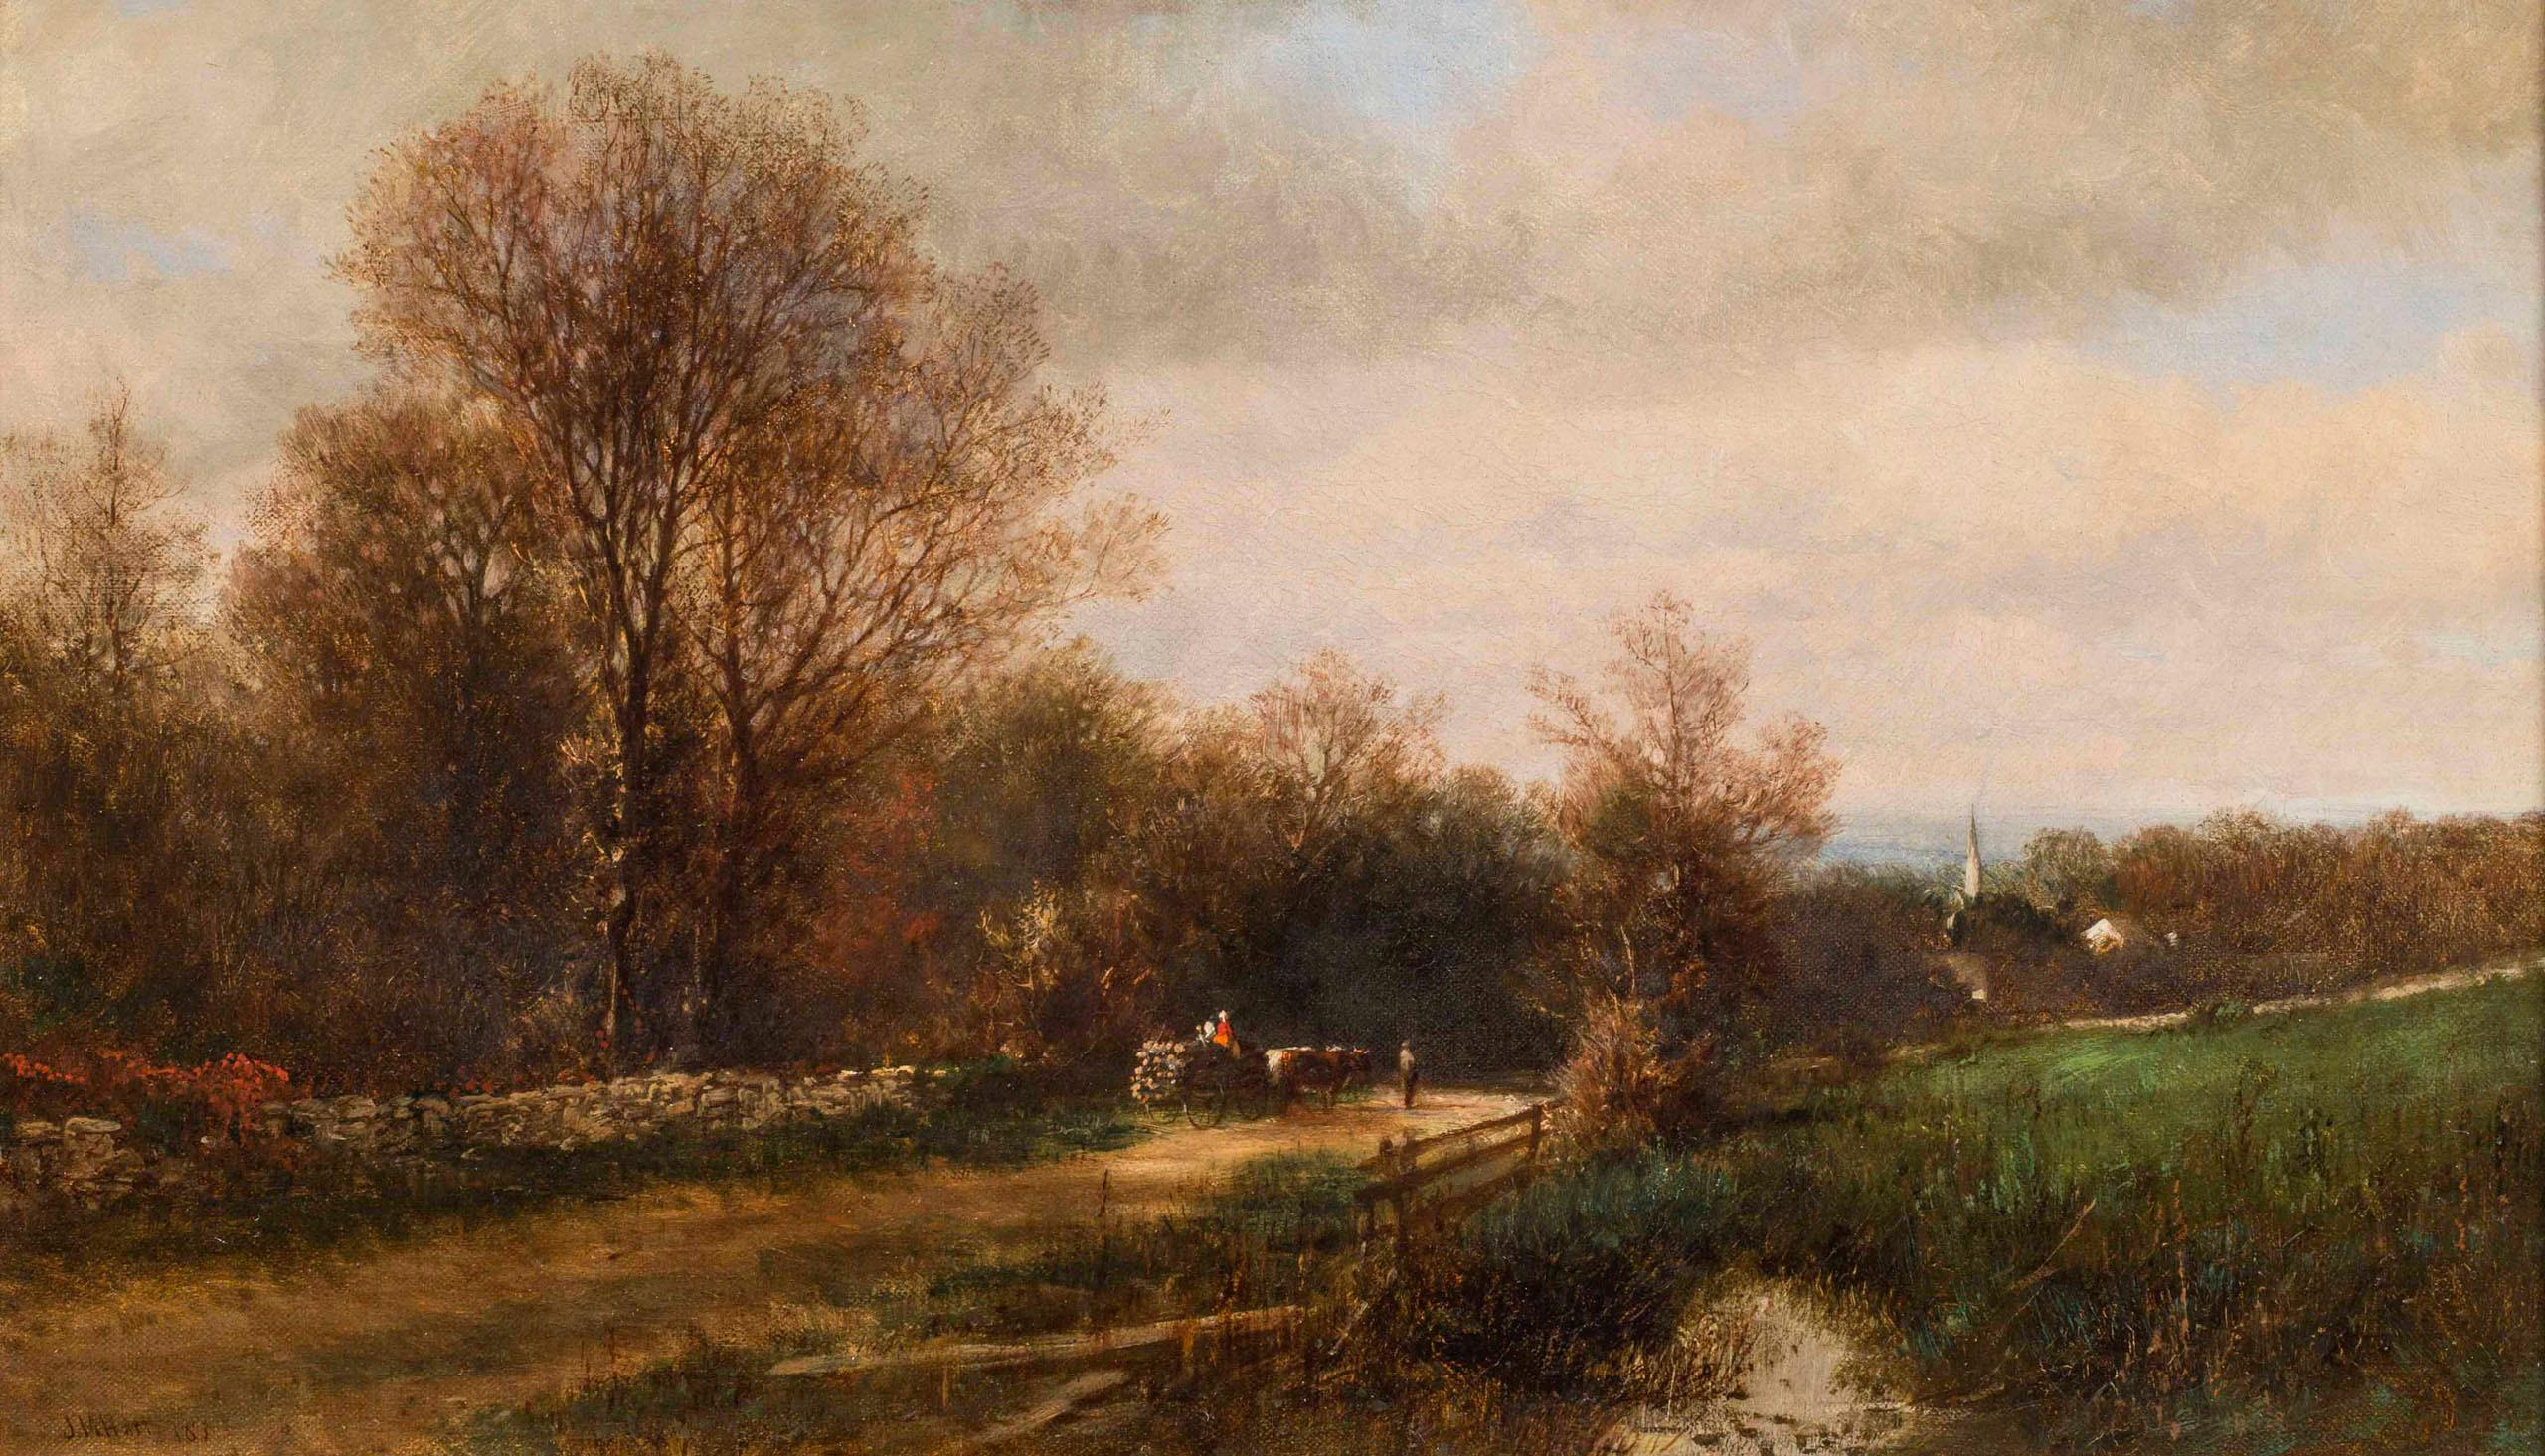 Ein Tag im November, 1863 von James MacDougal Hart (Amerikaner: 1828-1901) – Painting von James McDougal Hart